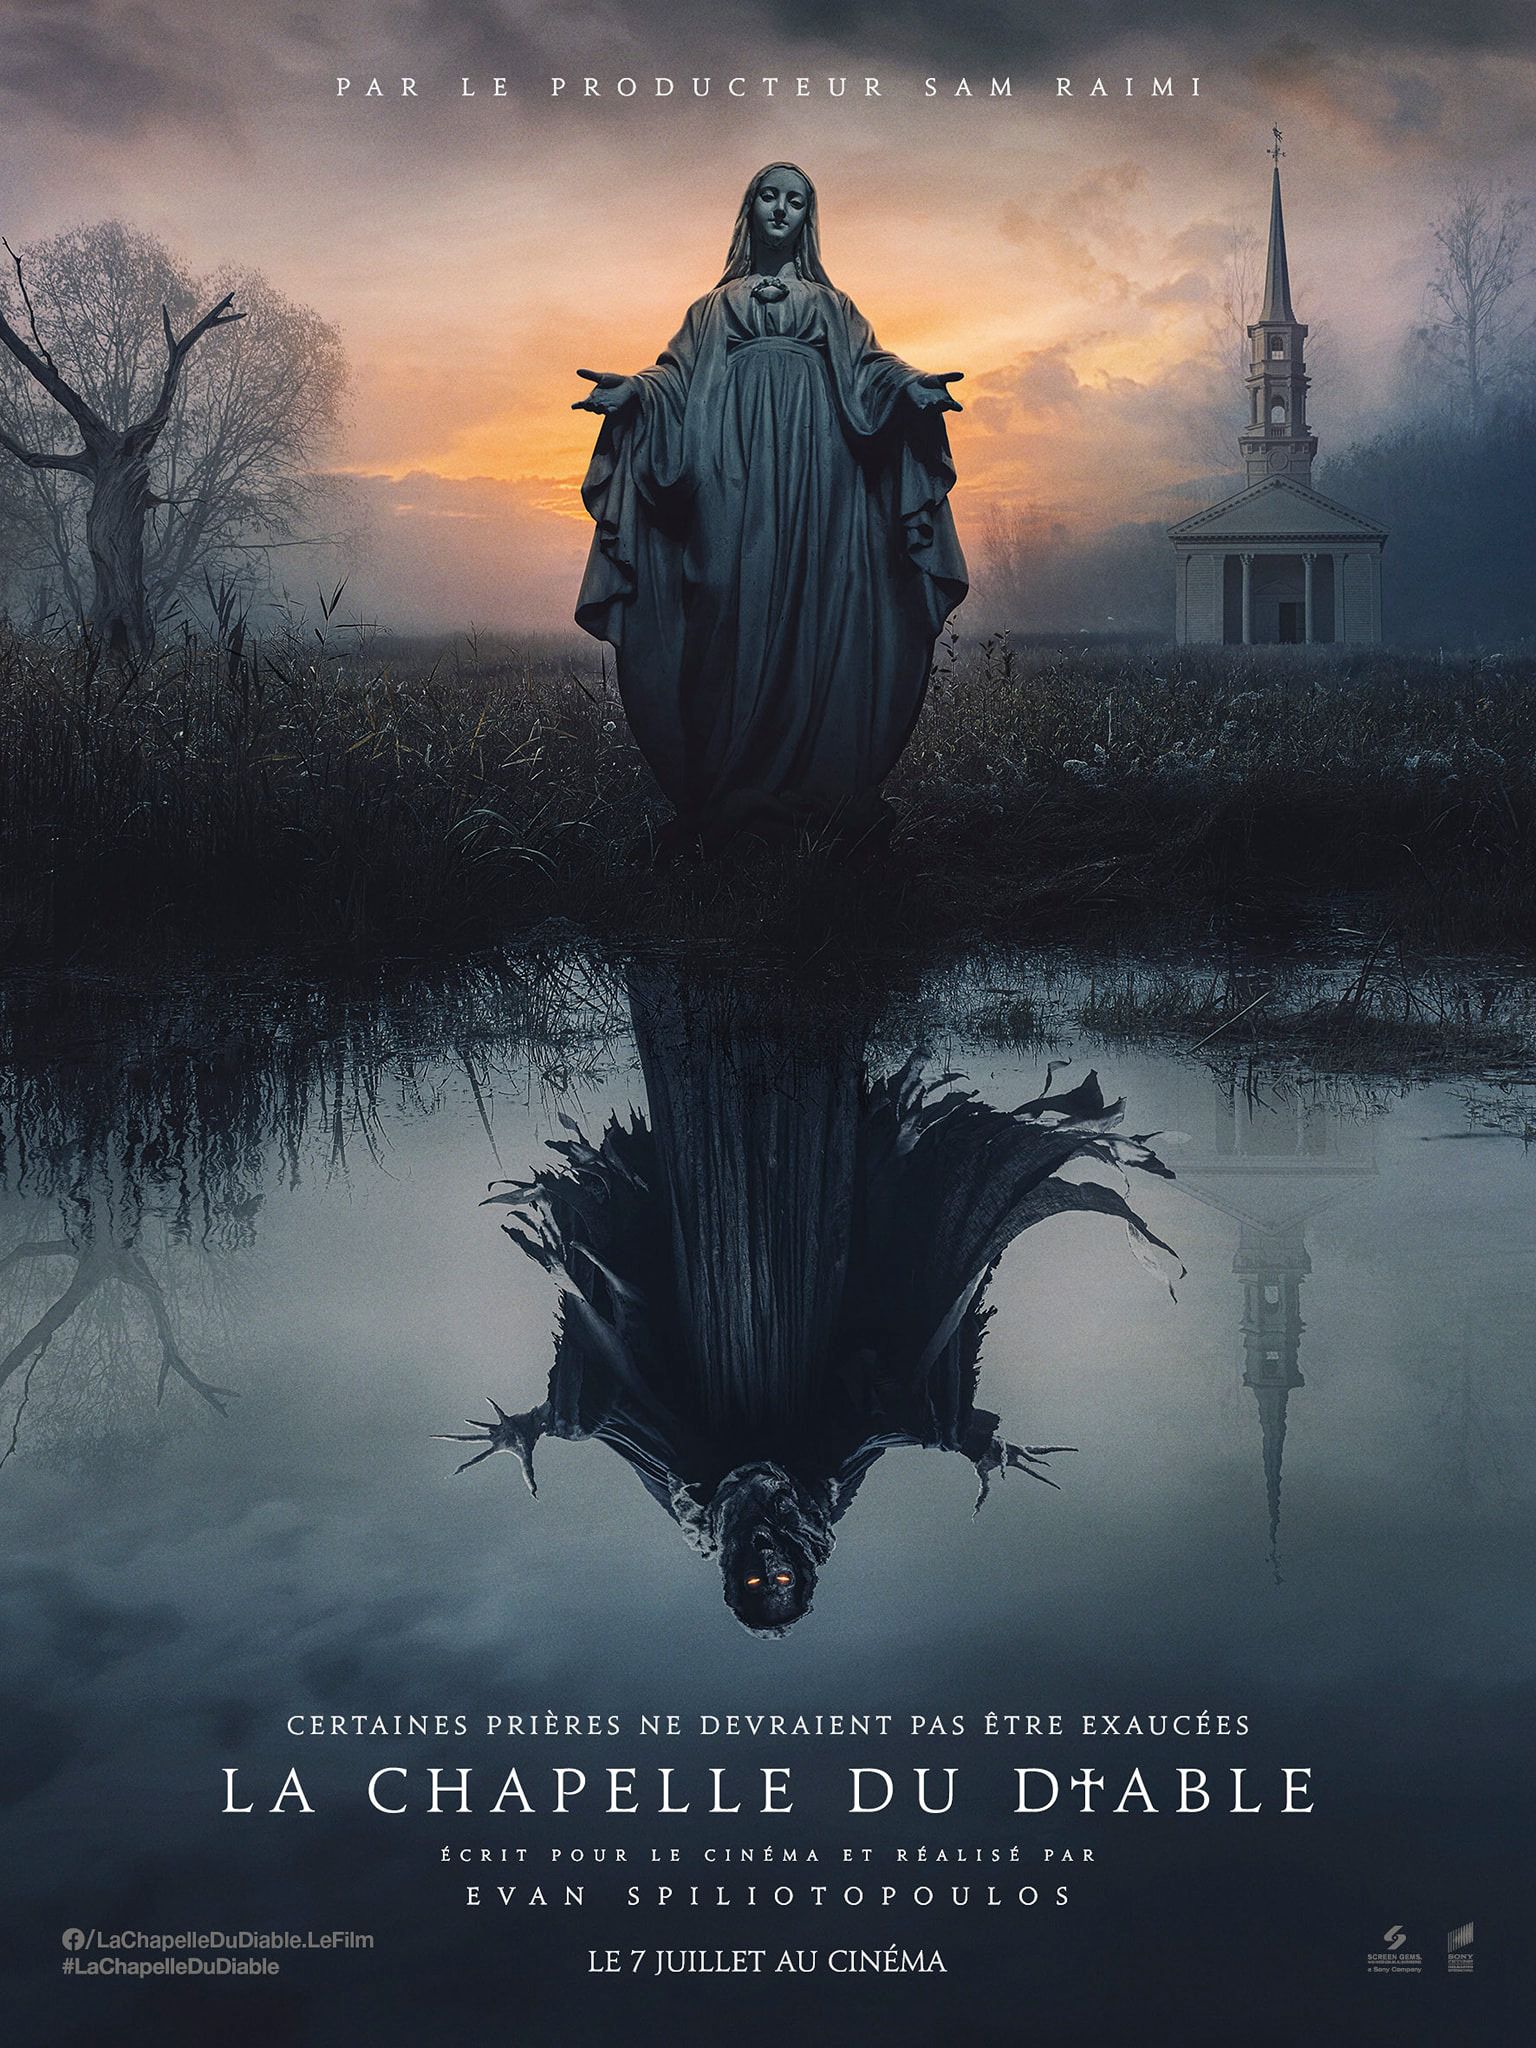 La Chapelle du Diable - Film (2021) streaming VF gratuit complet